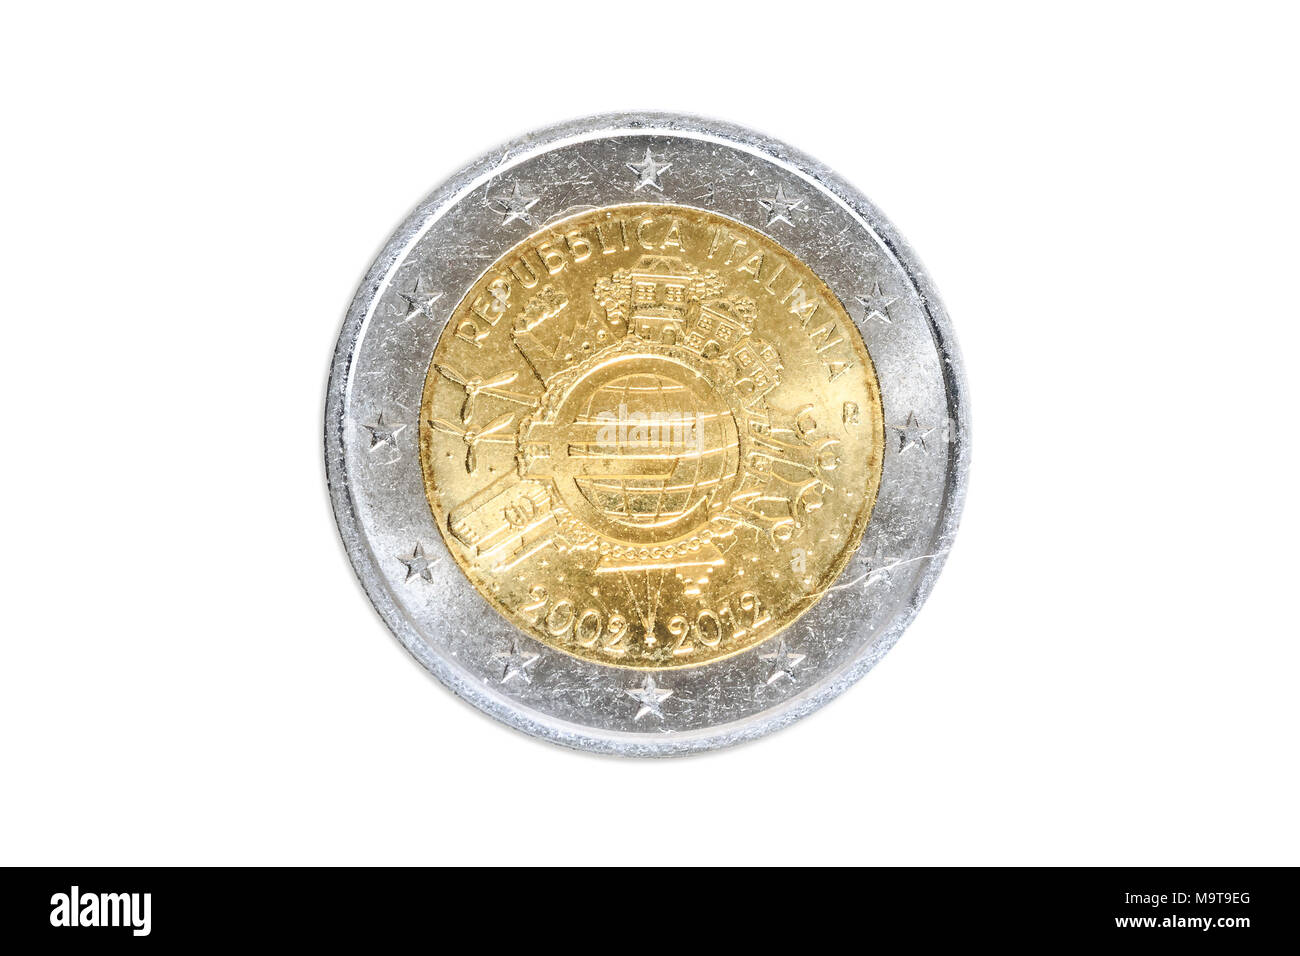 L'Italien des pièces commémoratives de 2 euros close-up avec symbole européen de l'Europe unie.10e anniversaire de l'introduction de l'euro en 2012. Isolé sur fond blanc studio. Côté tête. Banque D'Images